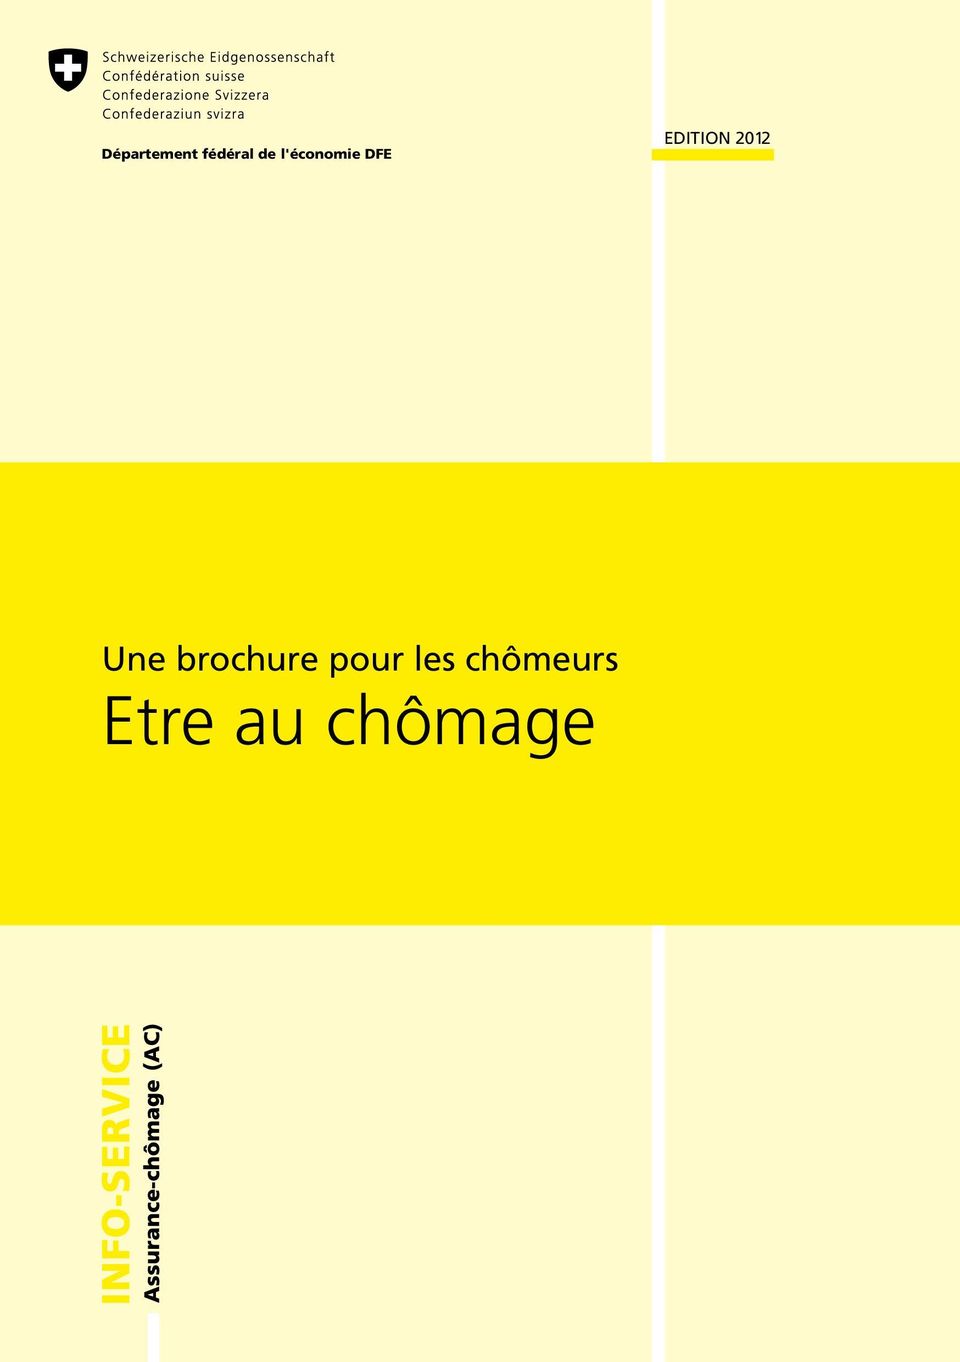 2012 Une brochure pour